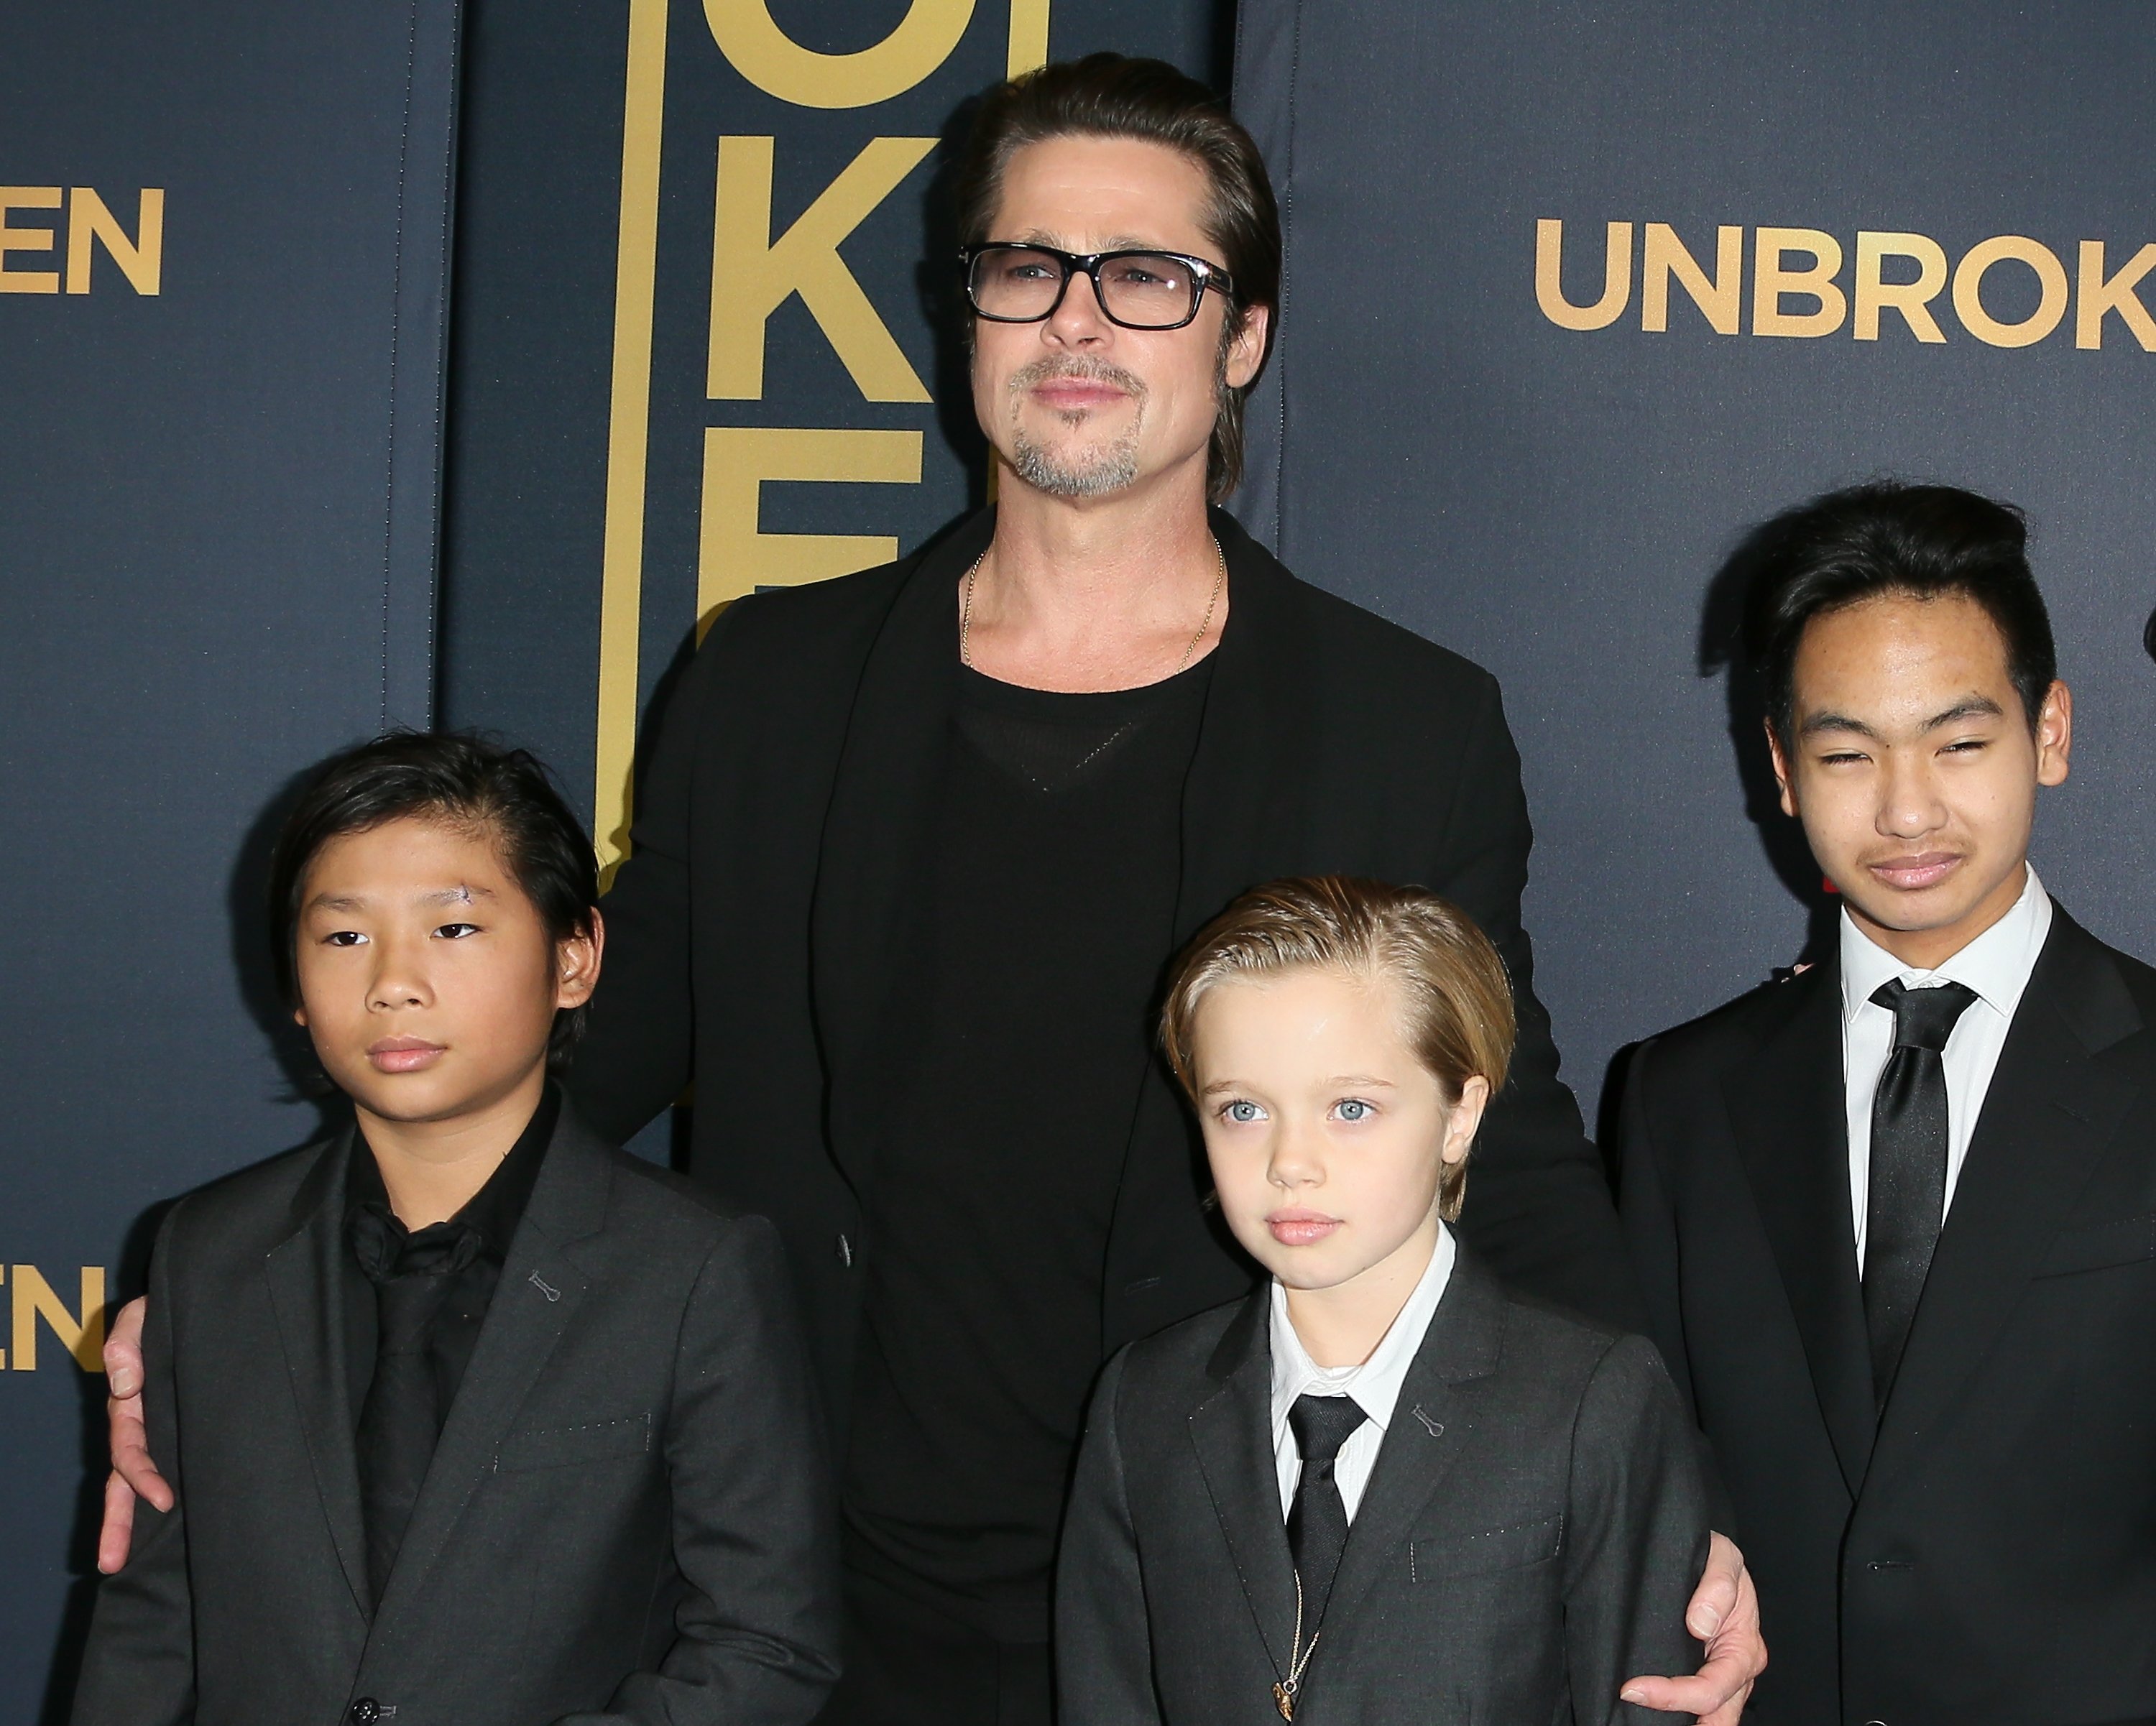 Brad Pitt, Pax Thien Jolie-Pitt, Shiloh Nouvel Jolie-Pitt y Maddox Jolie-Pitt en el estreno de "Unbroken" en el TCL Chinese Theatre IMAX, el 15 de diciembre de 2014 en Hollywood, California. | Foto: Getty Images